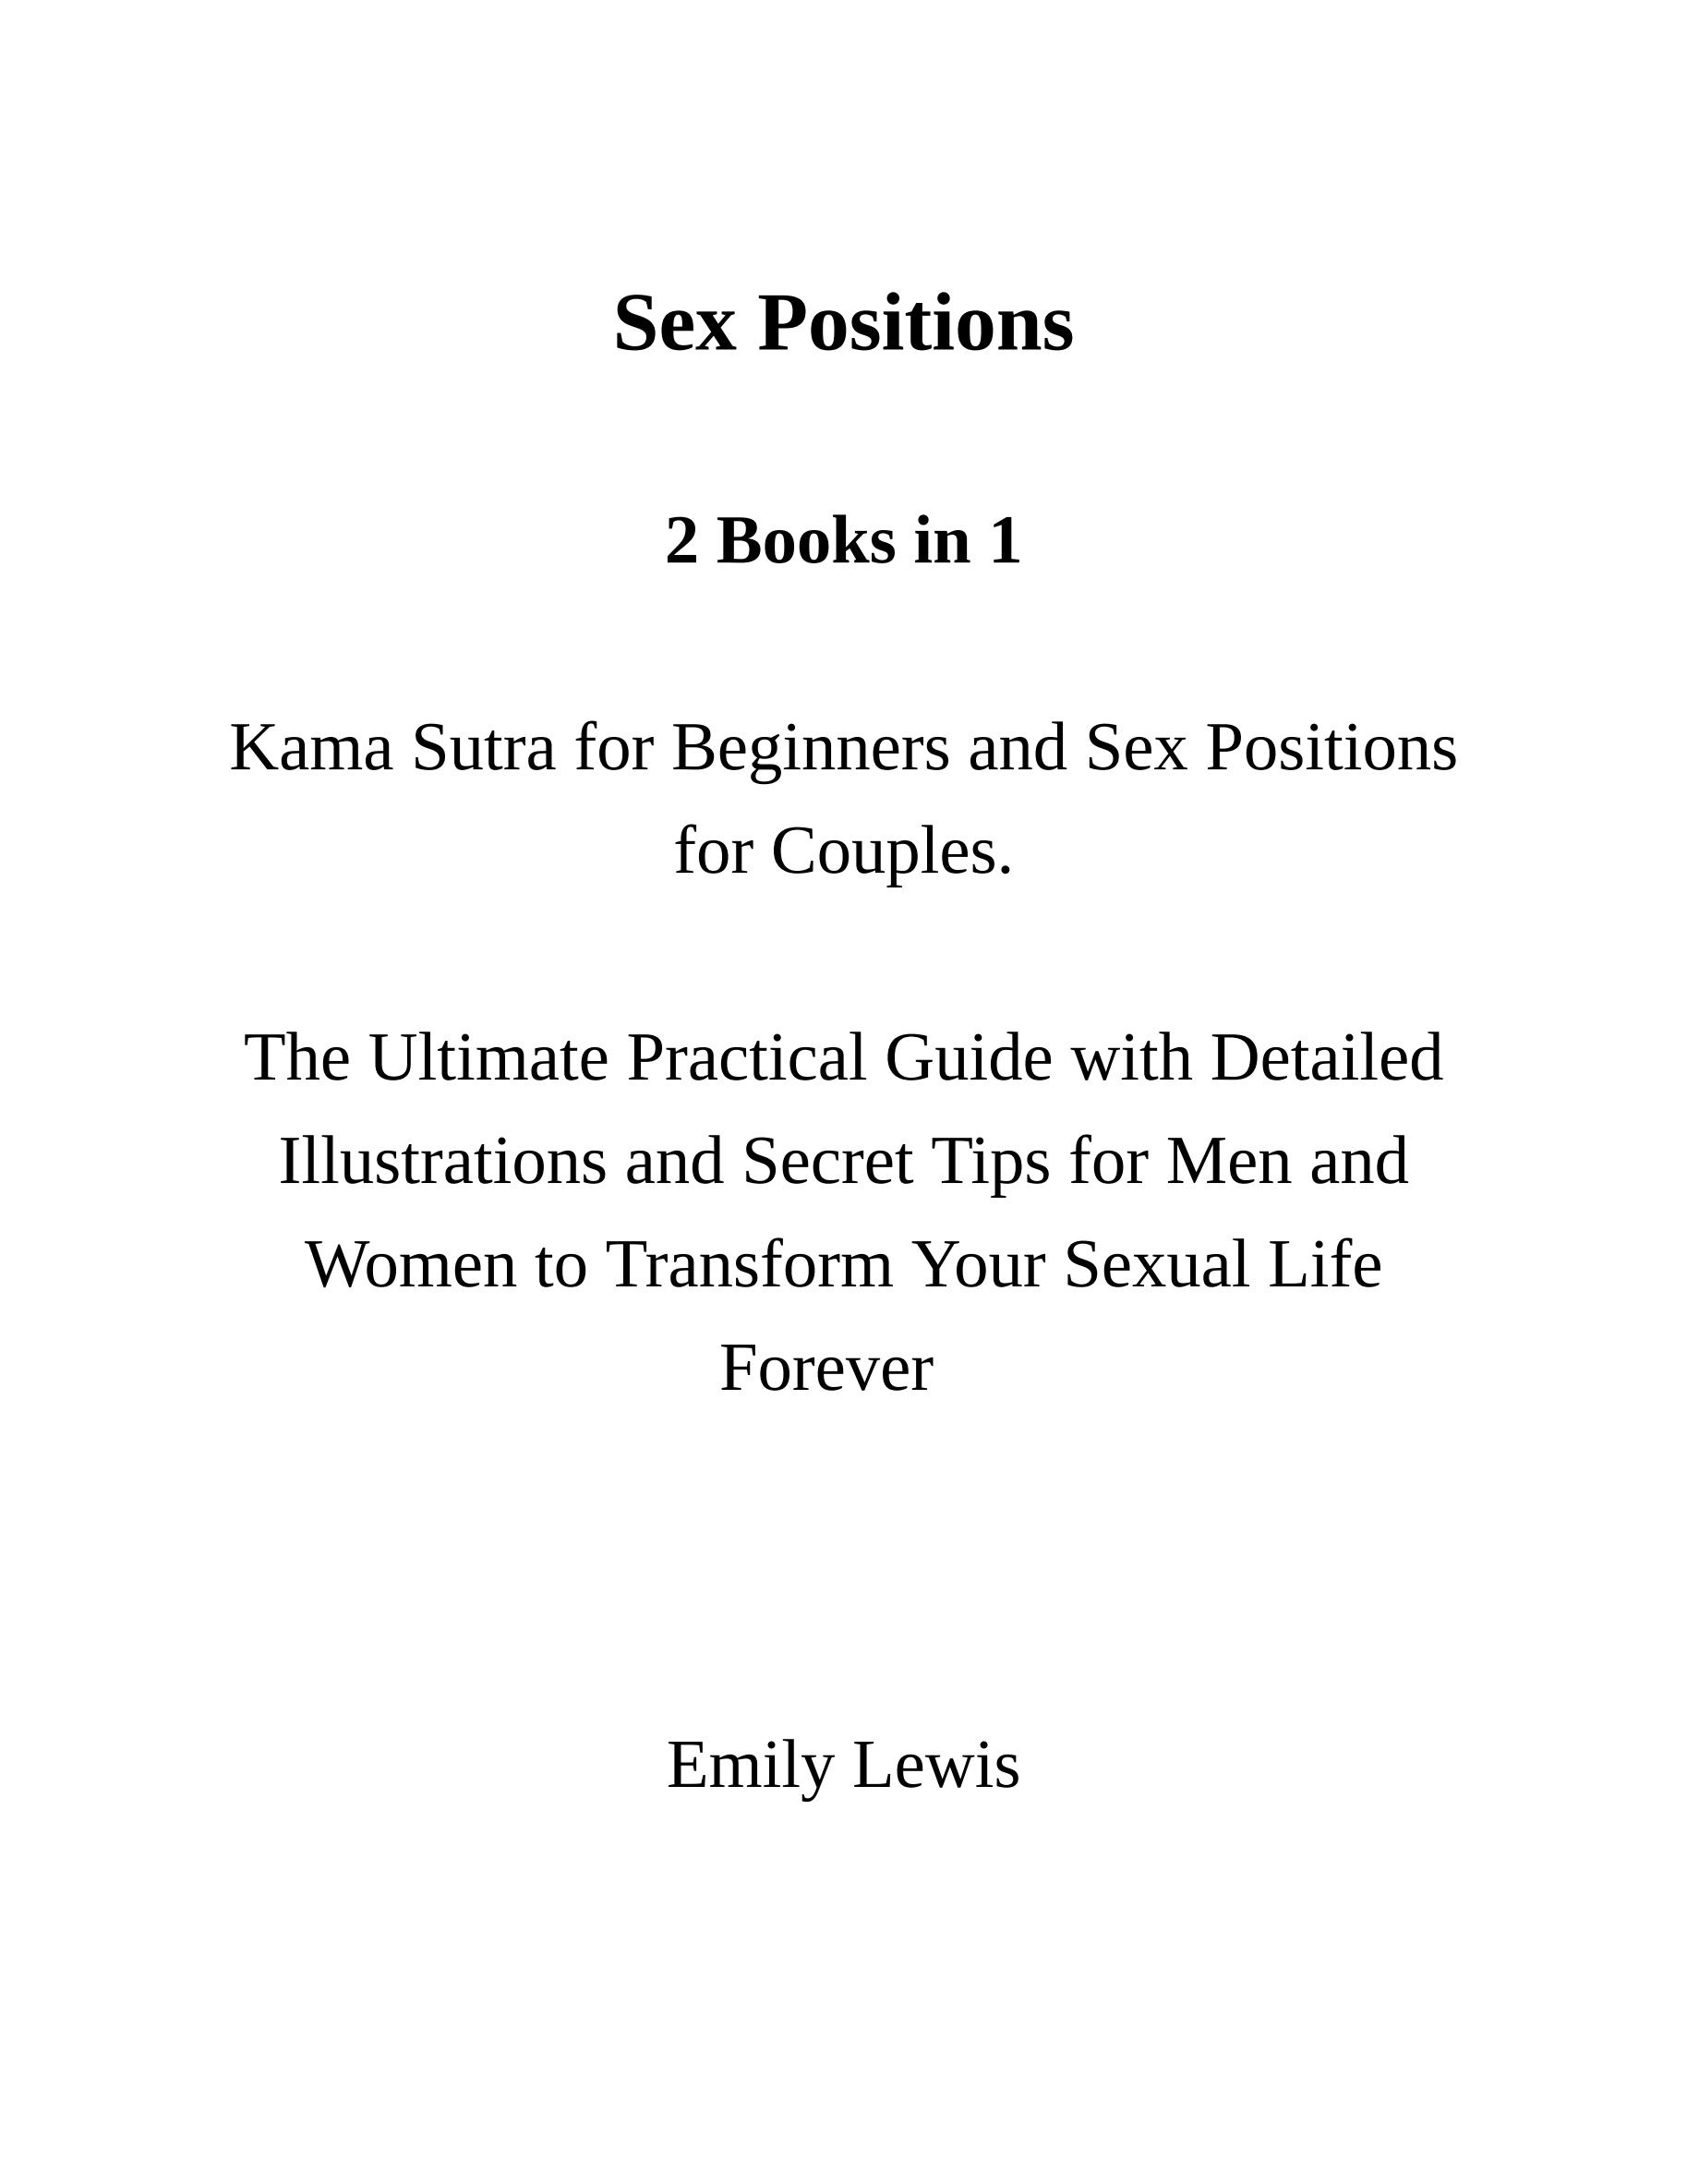 电子书-性爱姿势：2 本书合 1：Kama Sutra 和情侣性爱姿势。终极实用指南，附有详细插图和秘诀，让男女永远改变性生活(英)_文库-报告厅